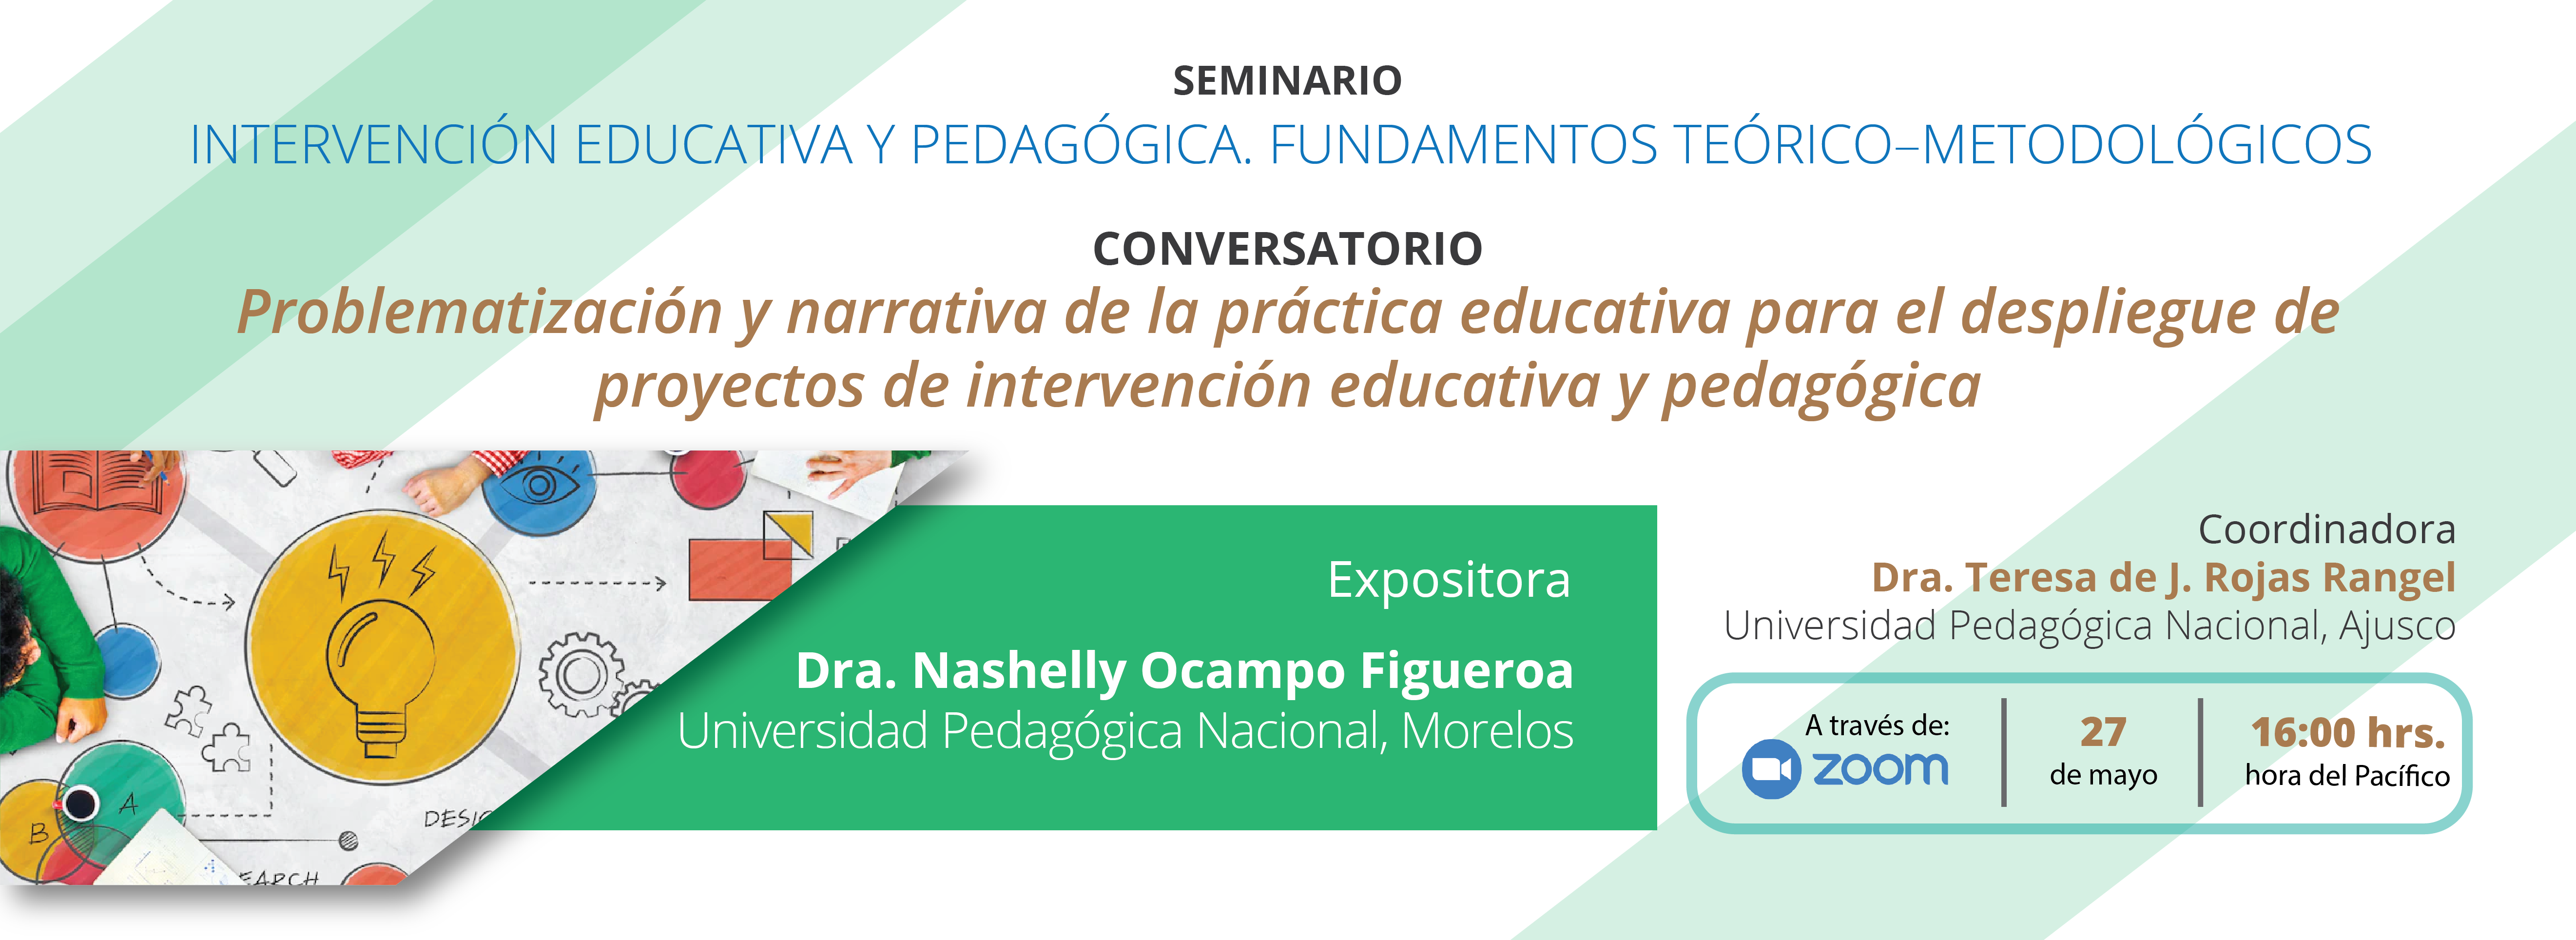 Invitacion_Seminario_Conversatorio_Problematizacion_y_narrativa_de_la_practica_educativa_banner_web